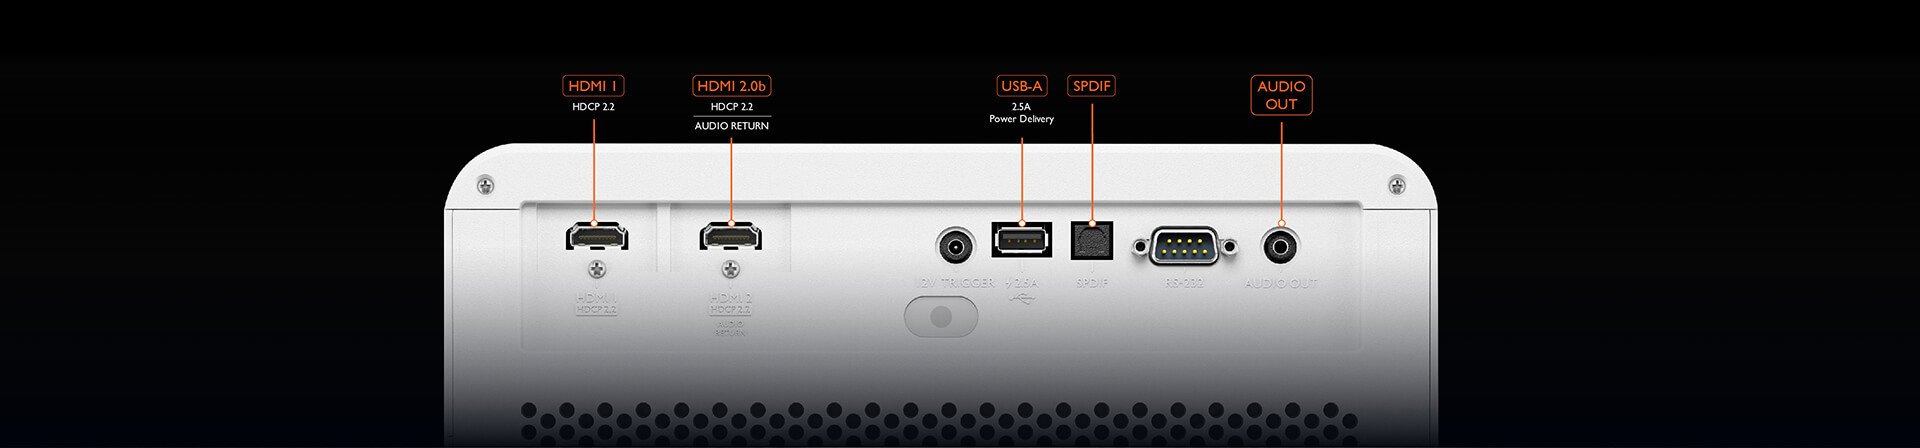 BenQ X1300i universelle Konnektivität durch zwei HDMI 2.0b (HDCP2.2) Anschlüsse und erweiterte AV-Steuerung